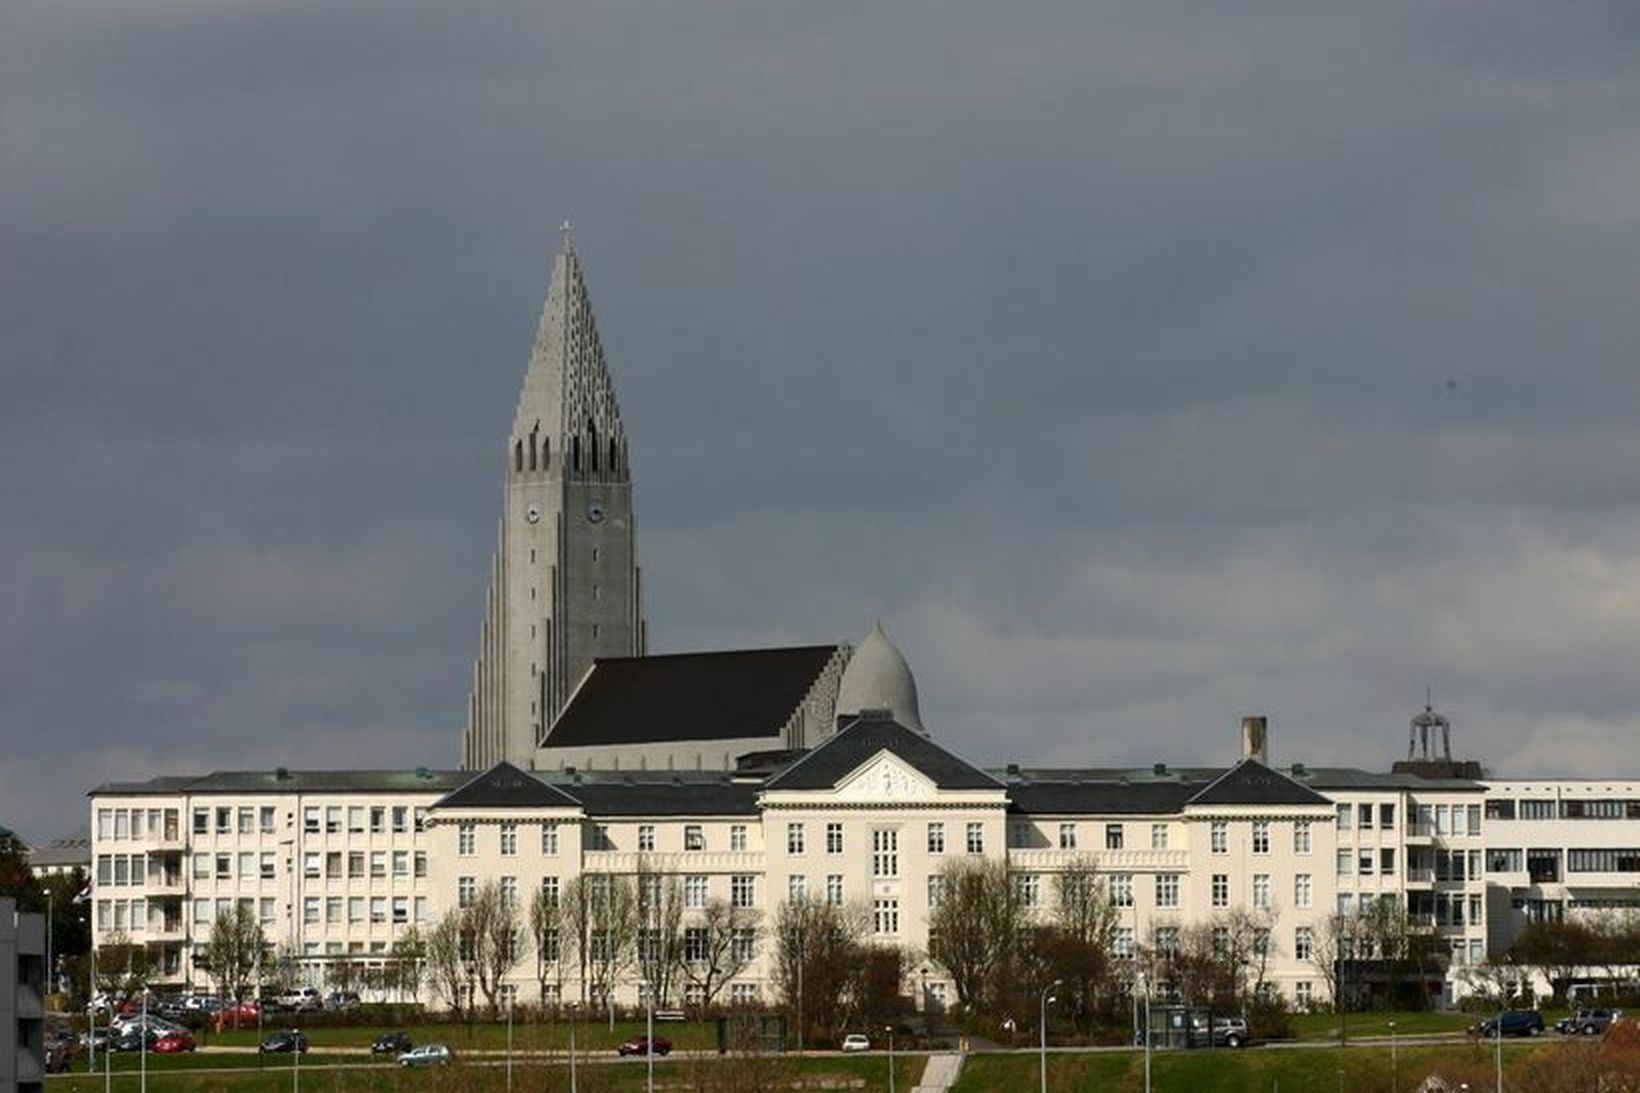 Átta ljósmæður hafa dregið uppsagnir sínar til baka á Landspítalanum.